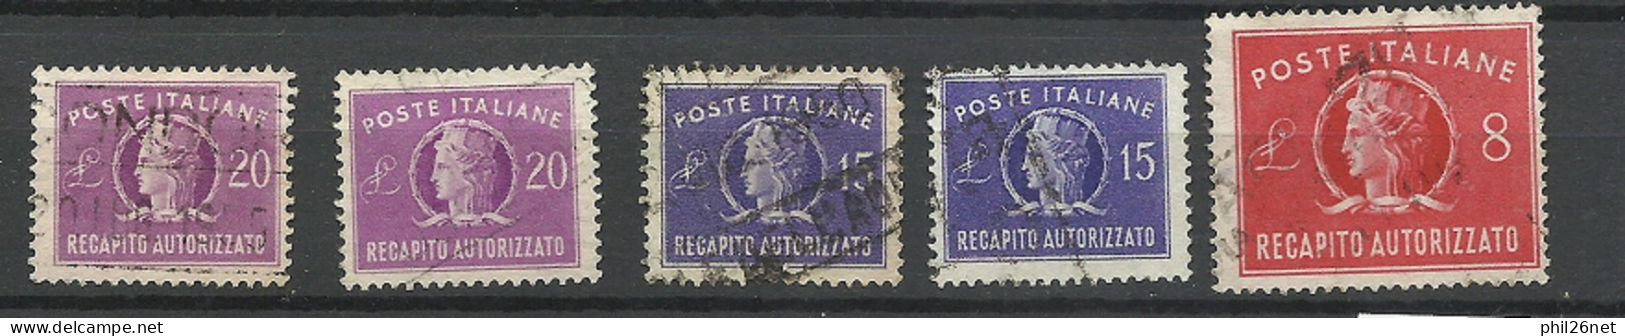 Italie  Fiscal  Récépisse   N° 34; 38 X 2 Et 39  X 2    Oblitérés   B/TB    Voir Scans  Soldé ! ! ! - Revenue Stamps